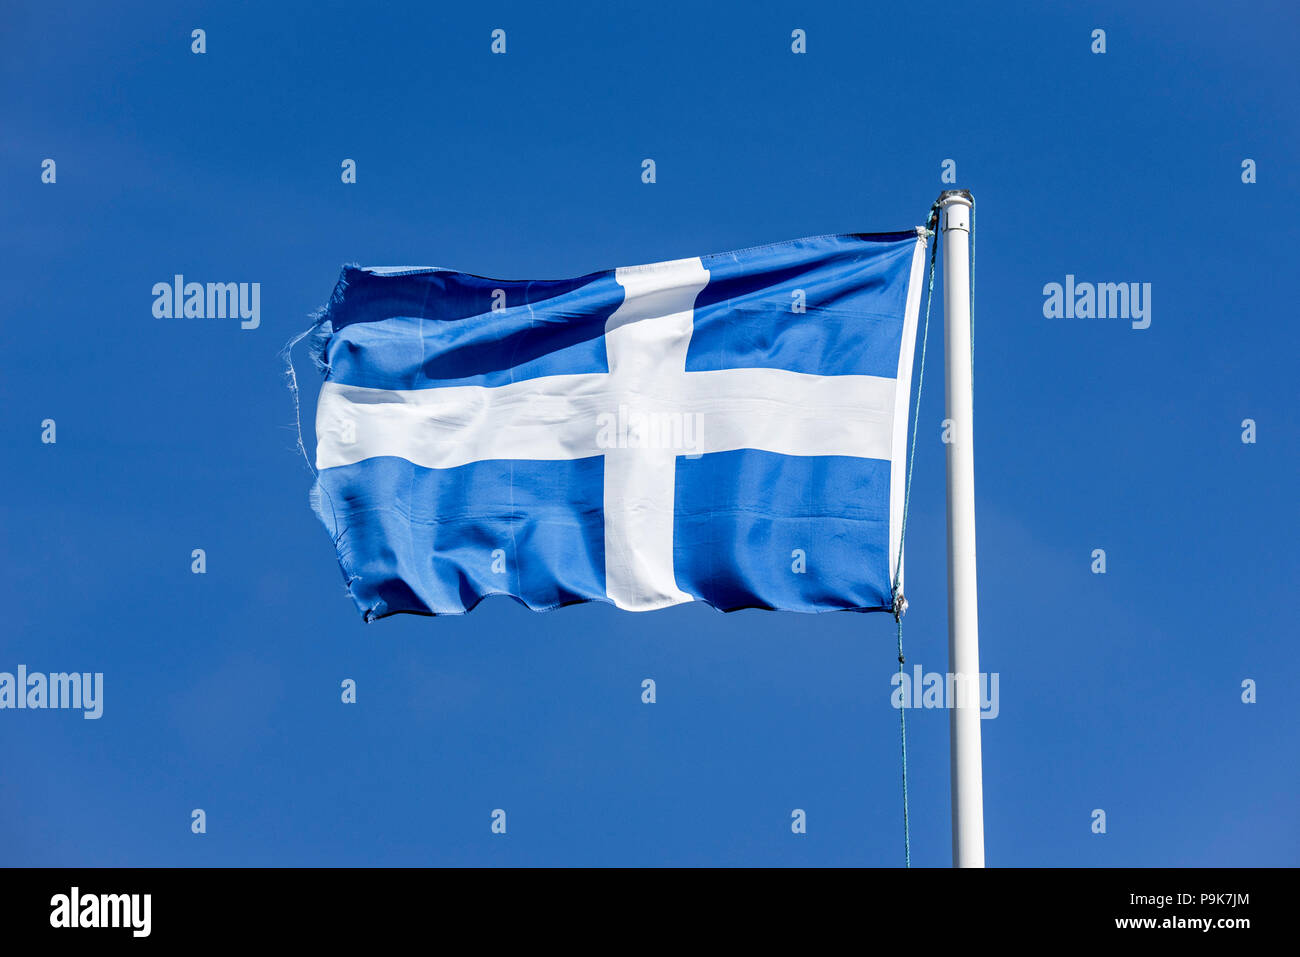 Drapeau usé du Shetland, Nordiques de la croix blanche sur fond bleu, dans le vent sur fond de ciel bleu, Shetland, Scotland, UK Banque D'Images